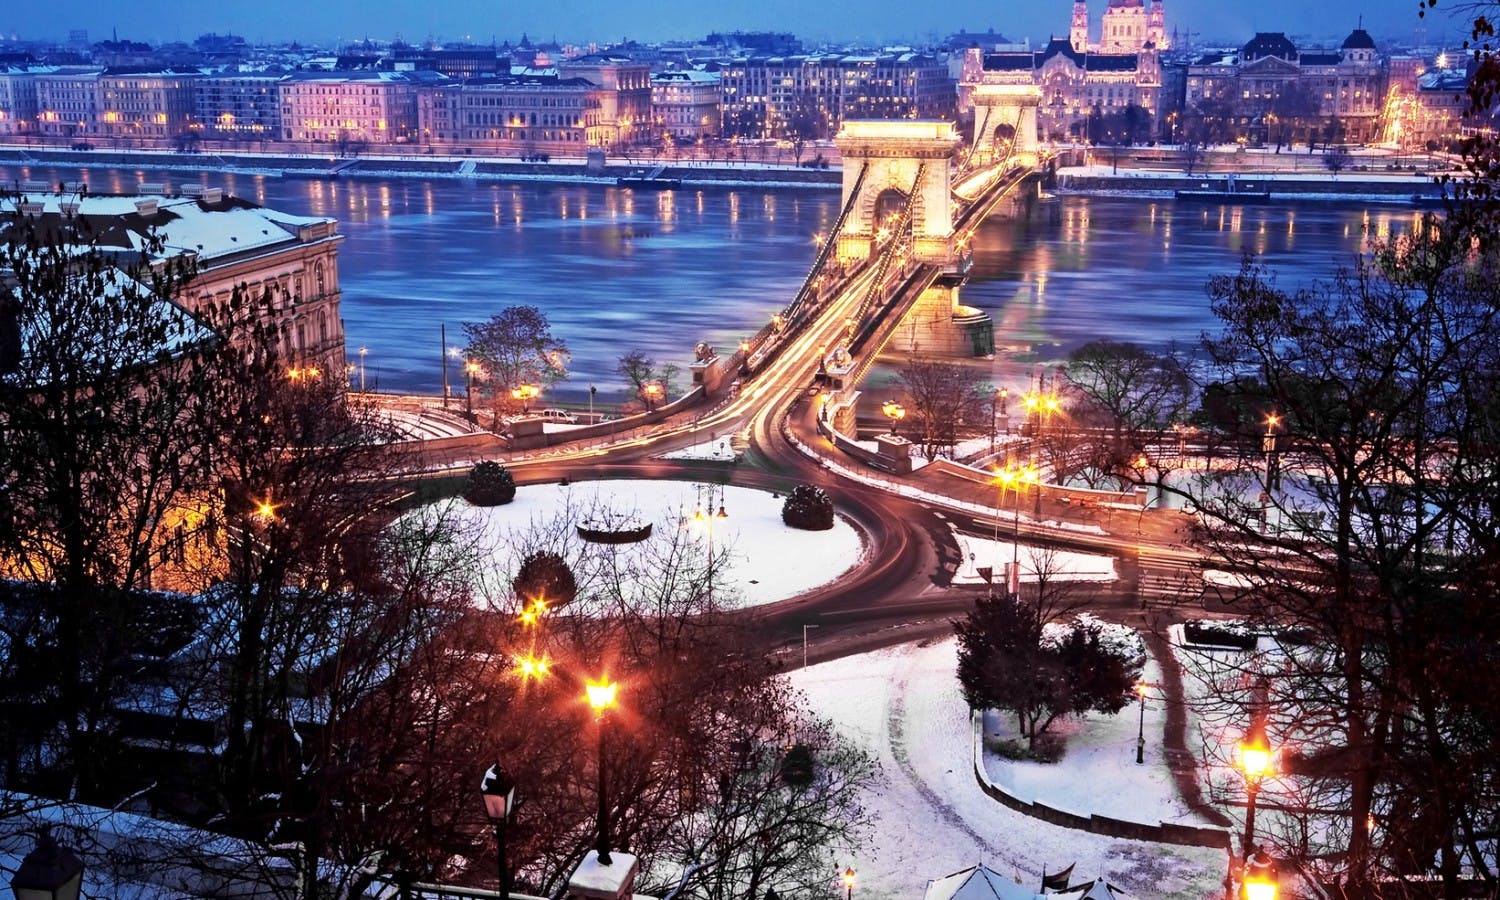 Budapest Christmas cruise december.jpg